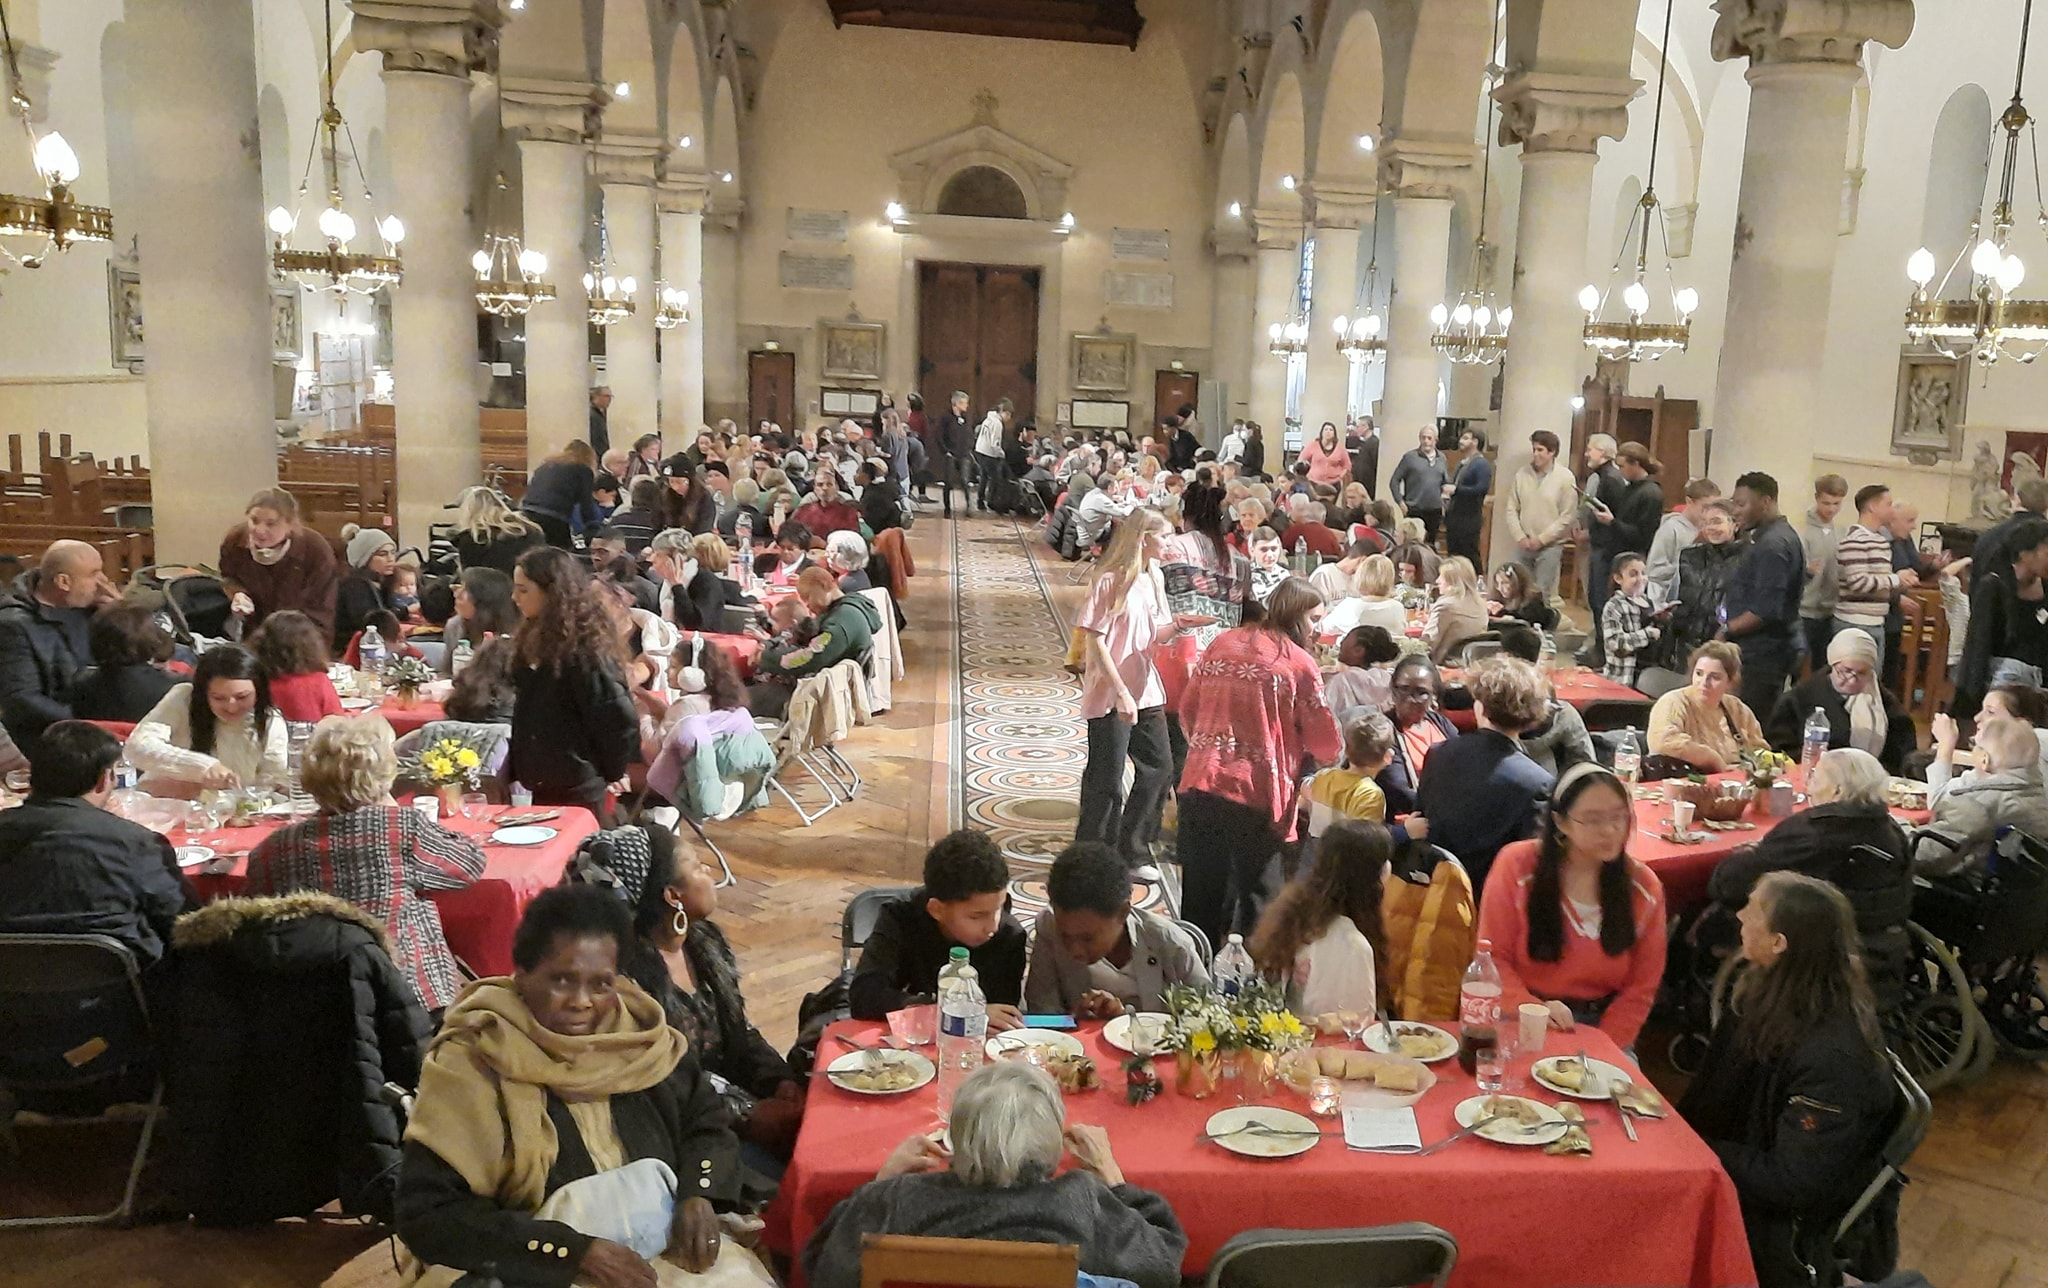 « Sinon j’aurais été seul » : 200 personnes isolées réunies à l’église de Charenton pour un déjeuner de Noël